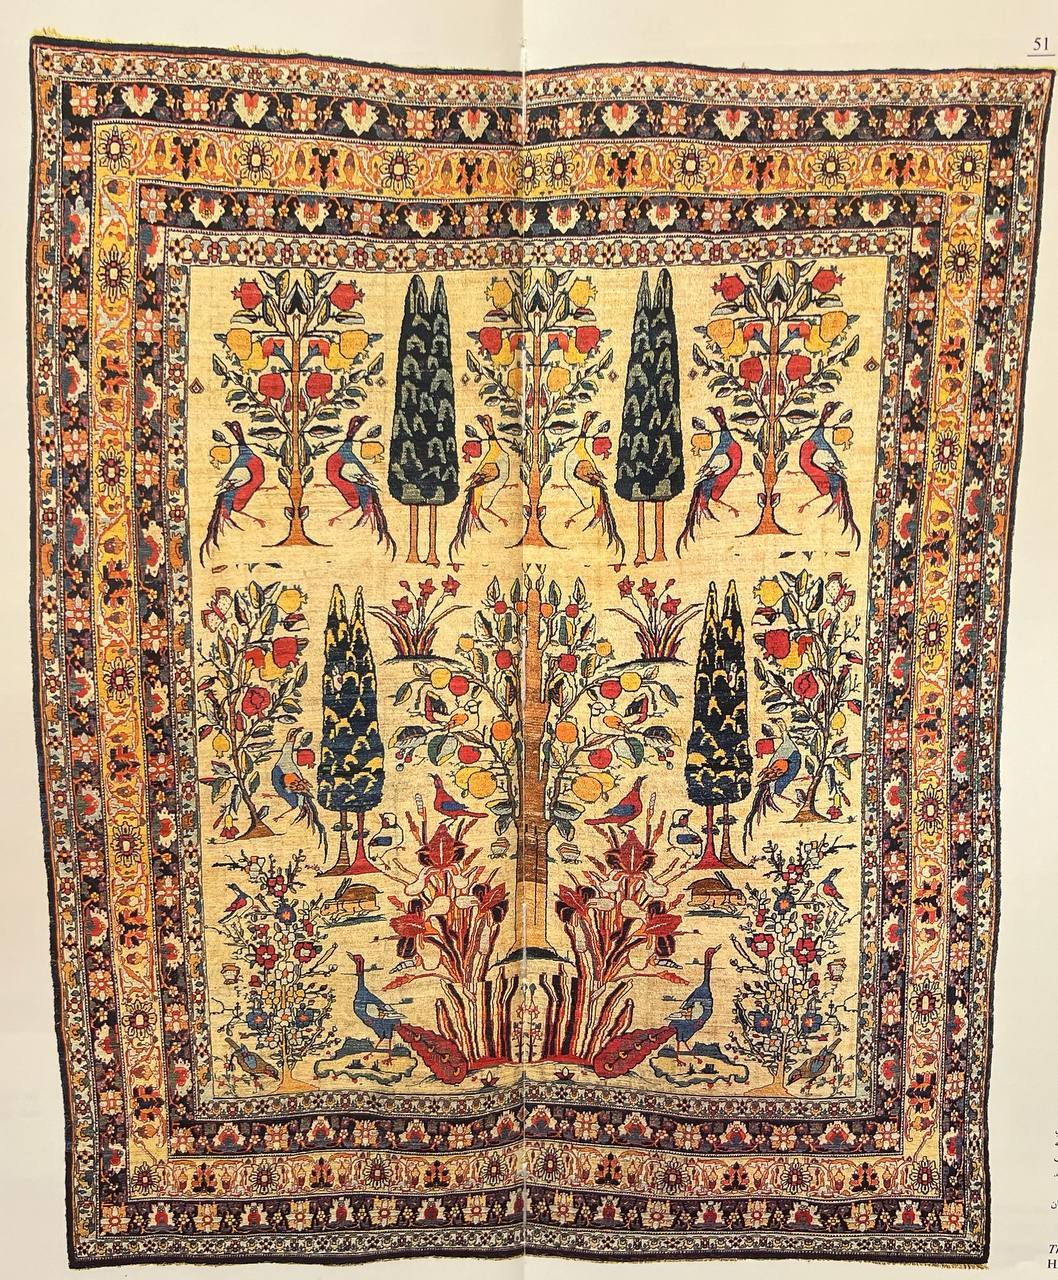 Persian Carpet in the Safavid era